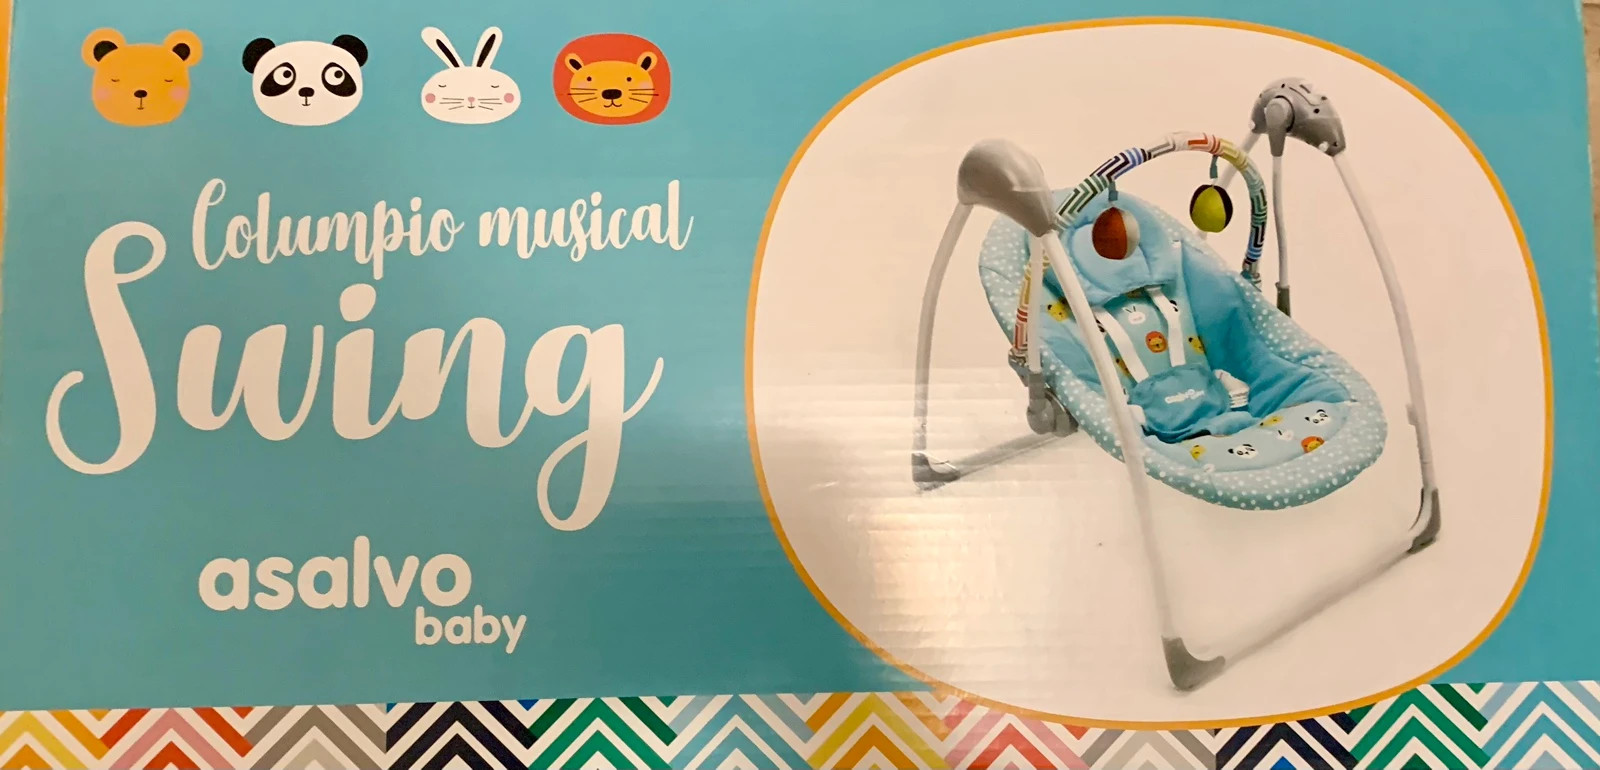 Espreguiçadeira Musical Azul Swing - 1 un - Asalvo